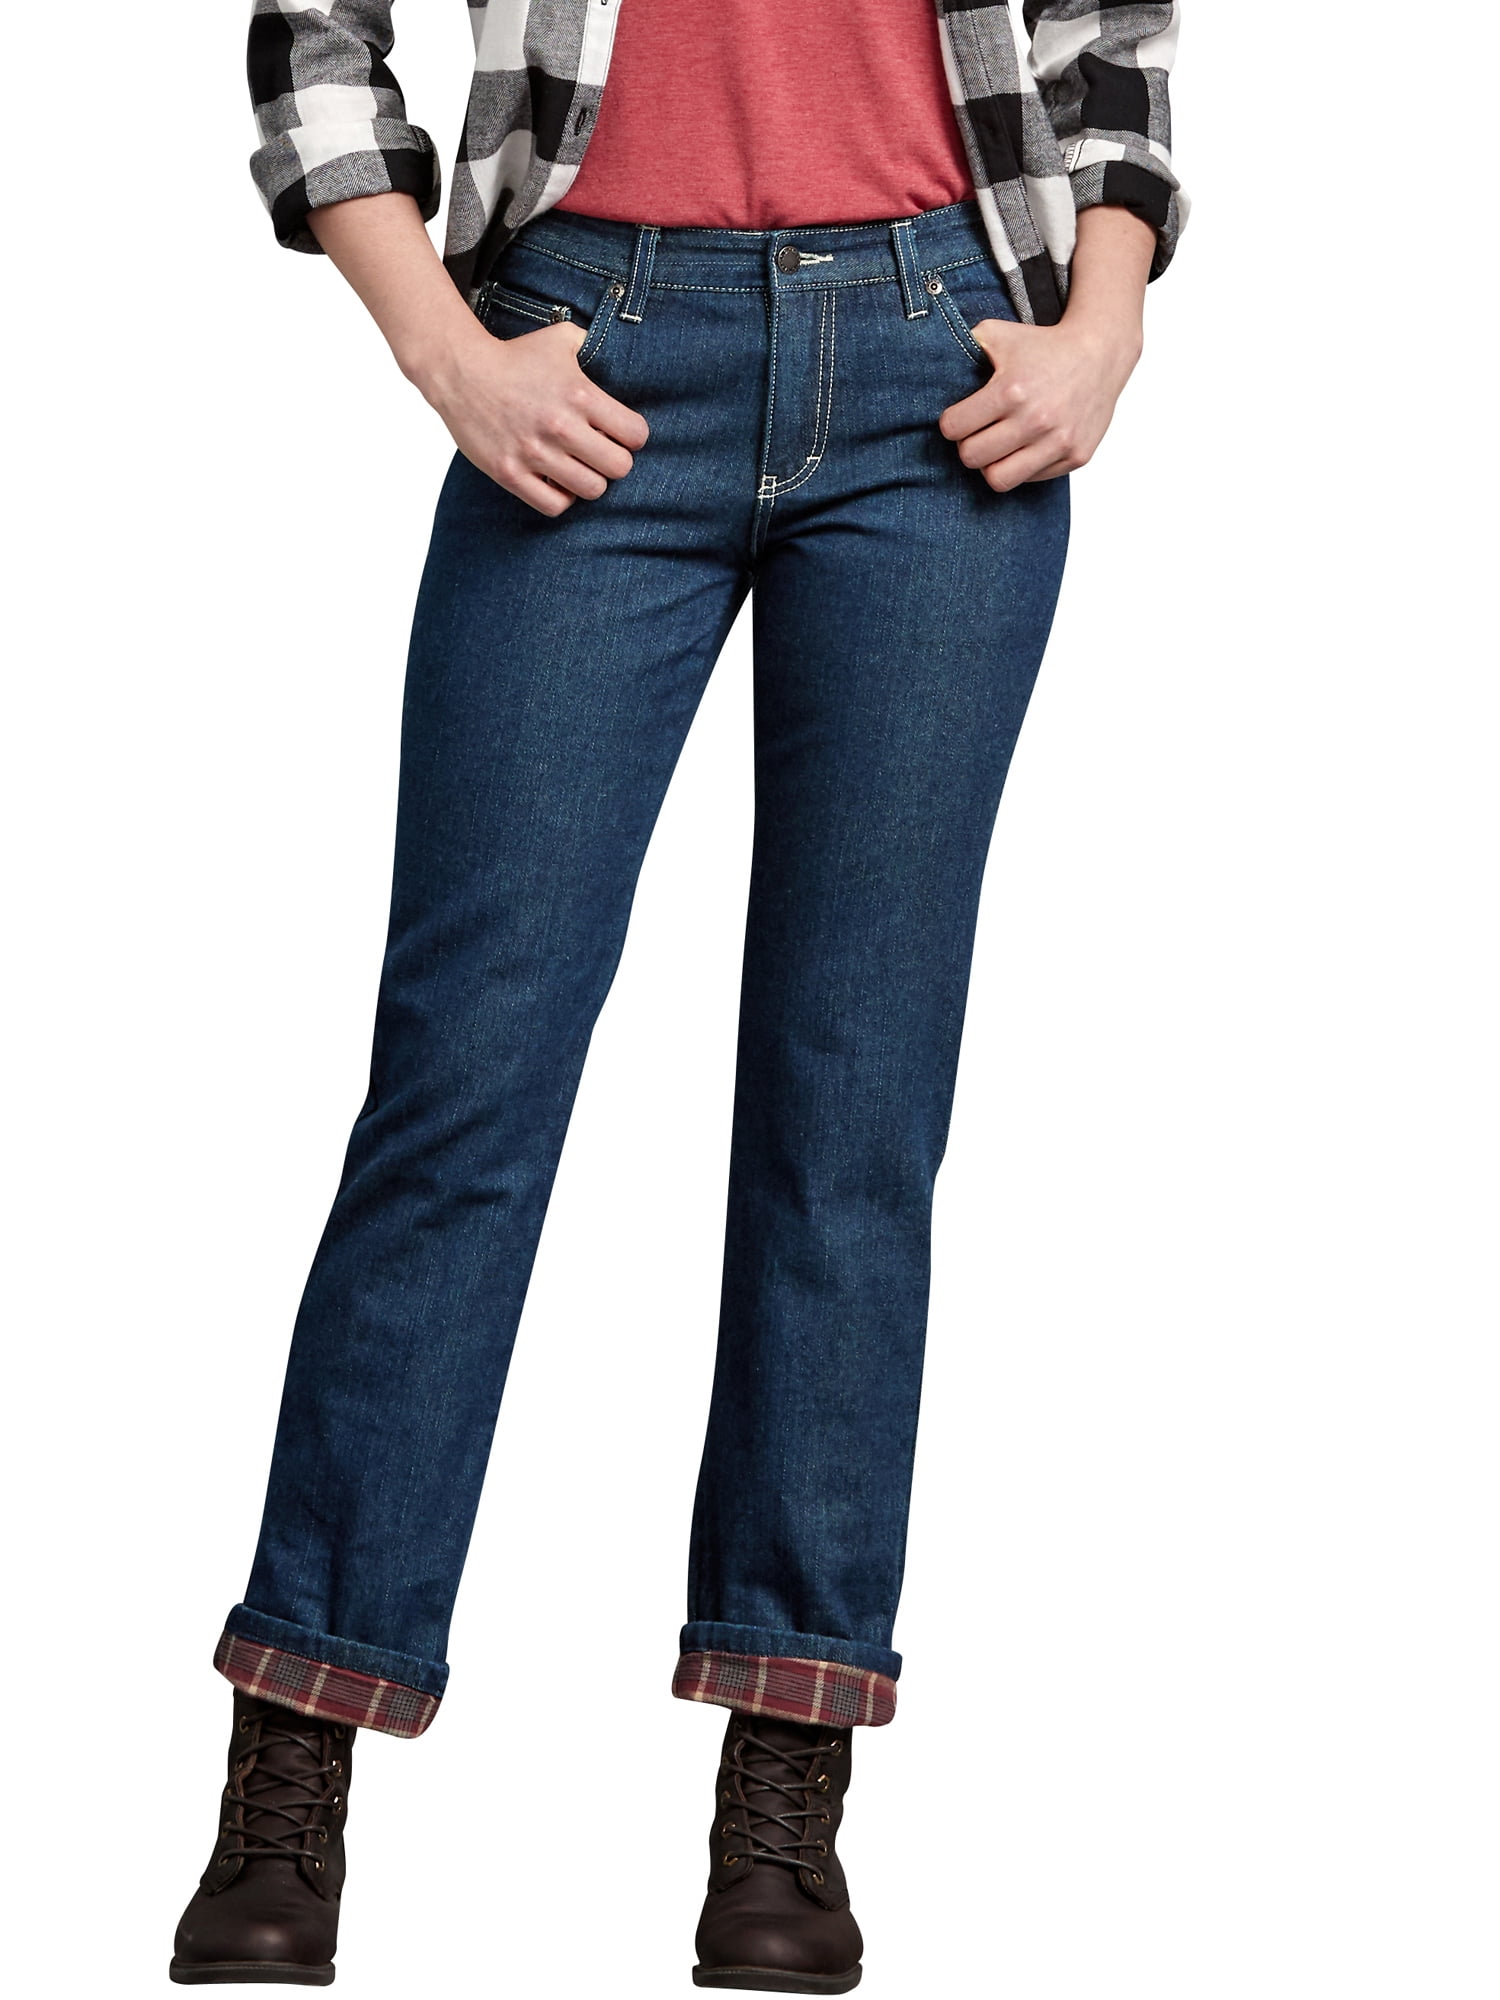 women's flannel lined jeans petite